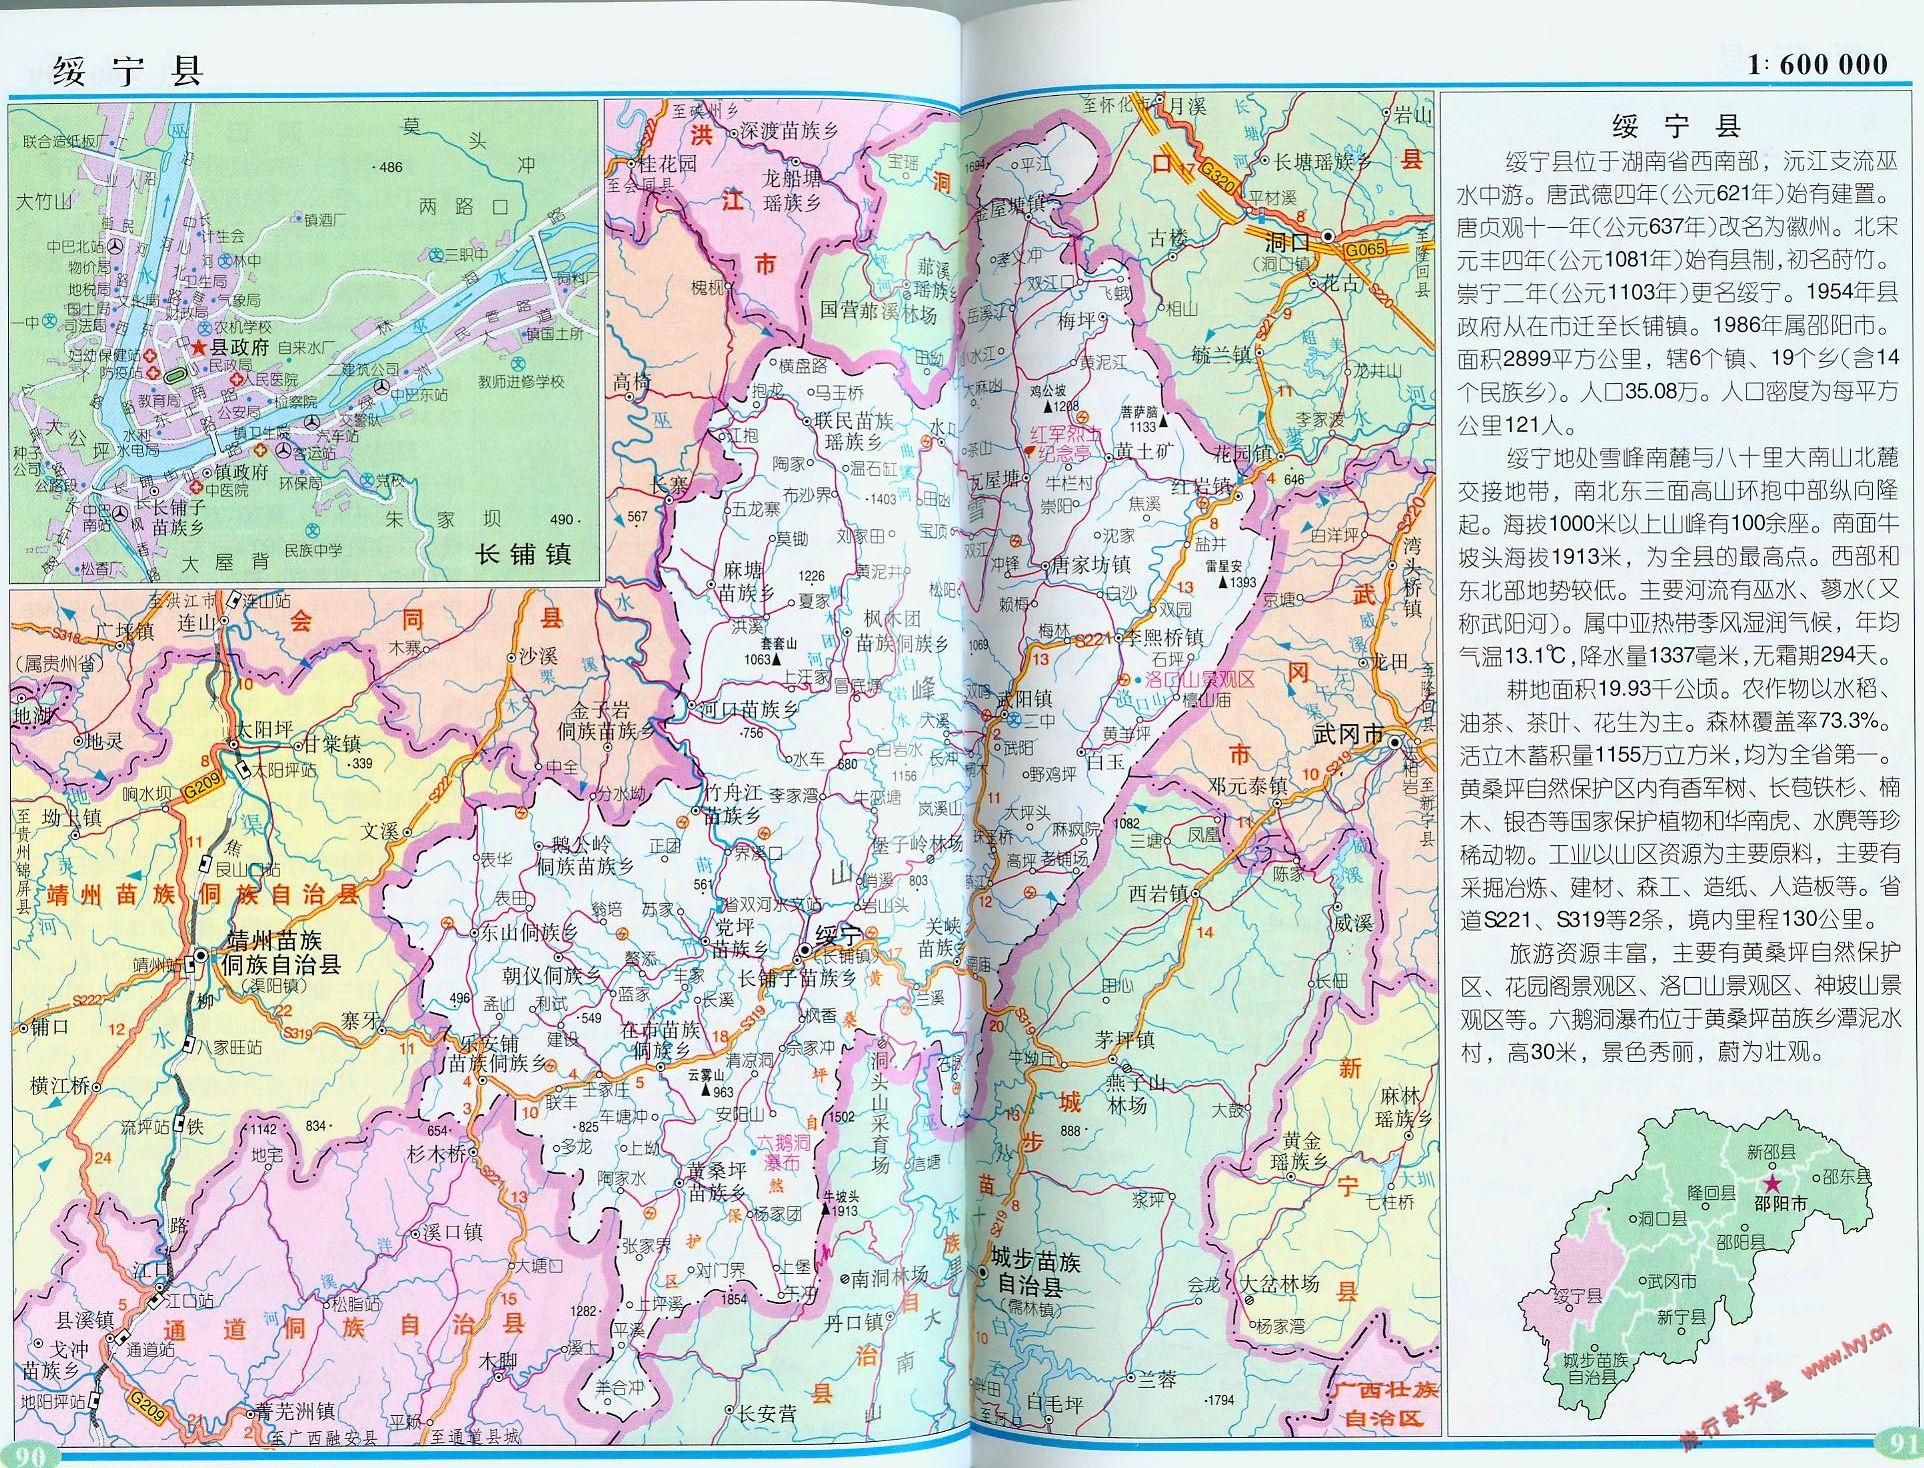 地图窝 中国地图 湖南 邵阳  (长按地图可以放大,保存,分享)图片